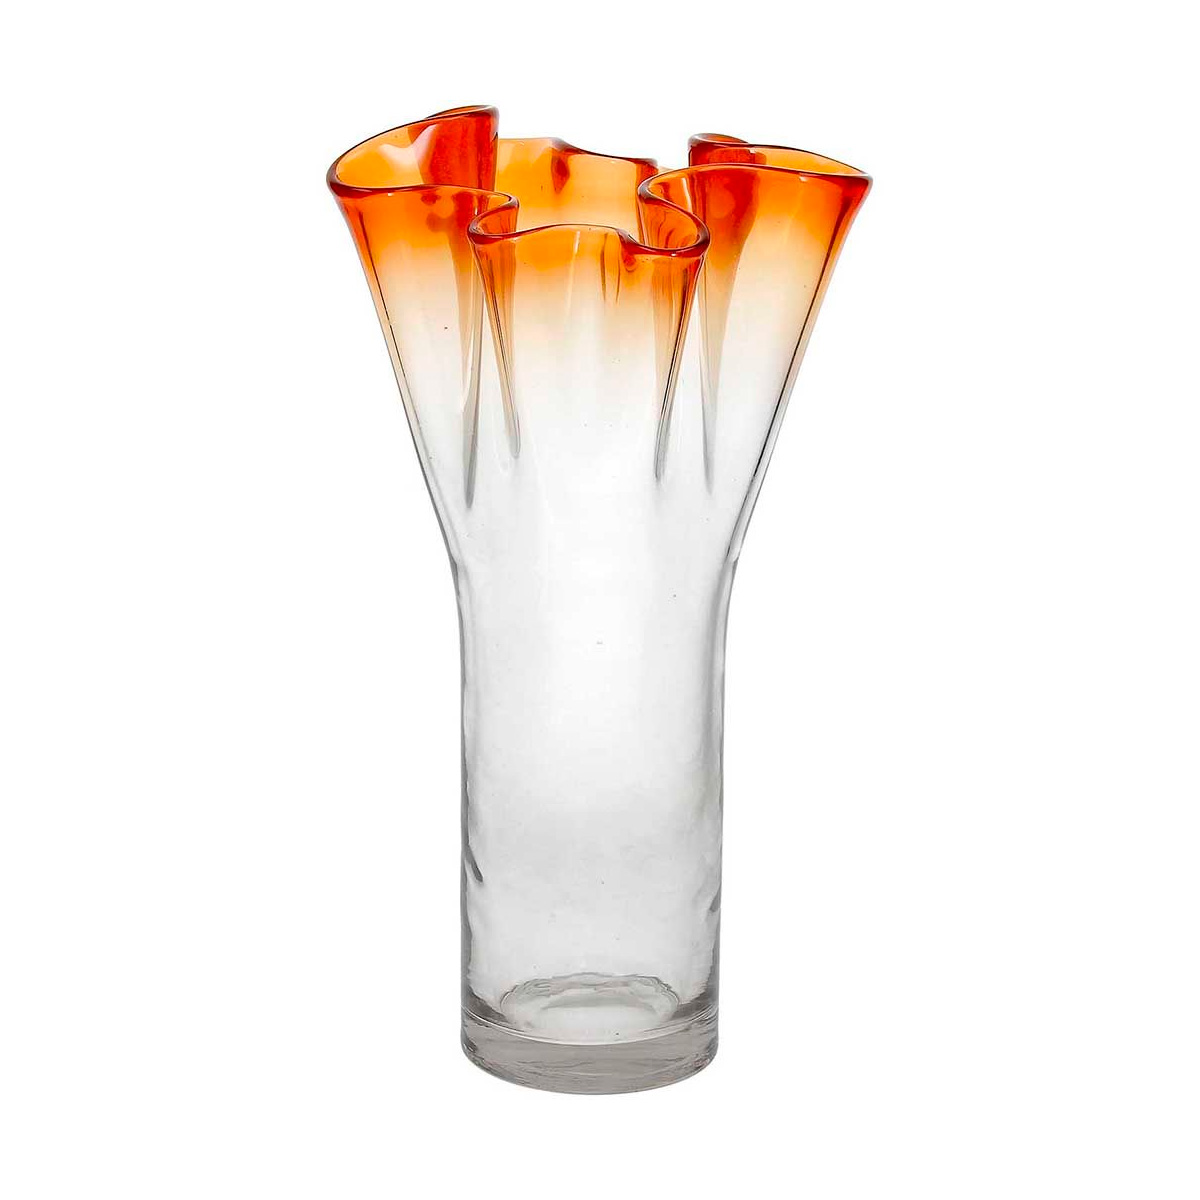 Ваза Andrea Fontebasso Glass Design Bizarre 27см, цвет оранжевый часы песочные 20см andrea fontebasso glass design time